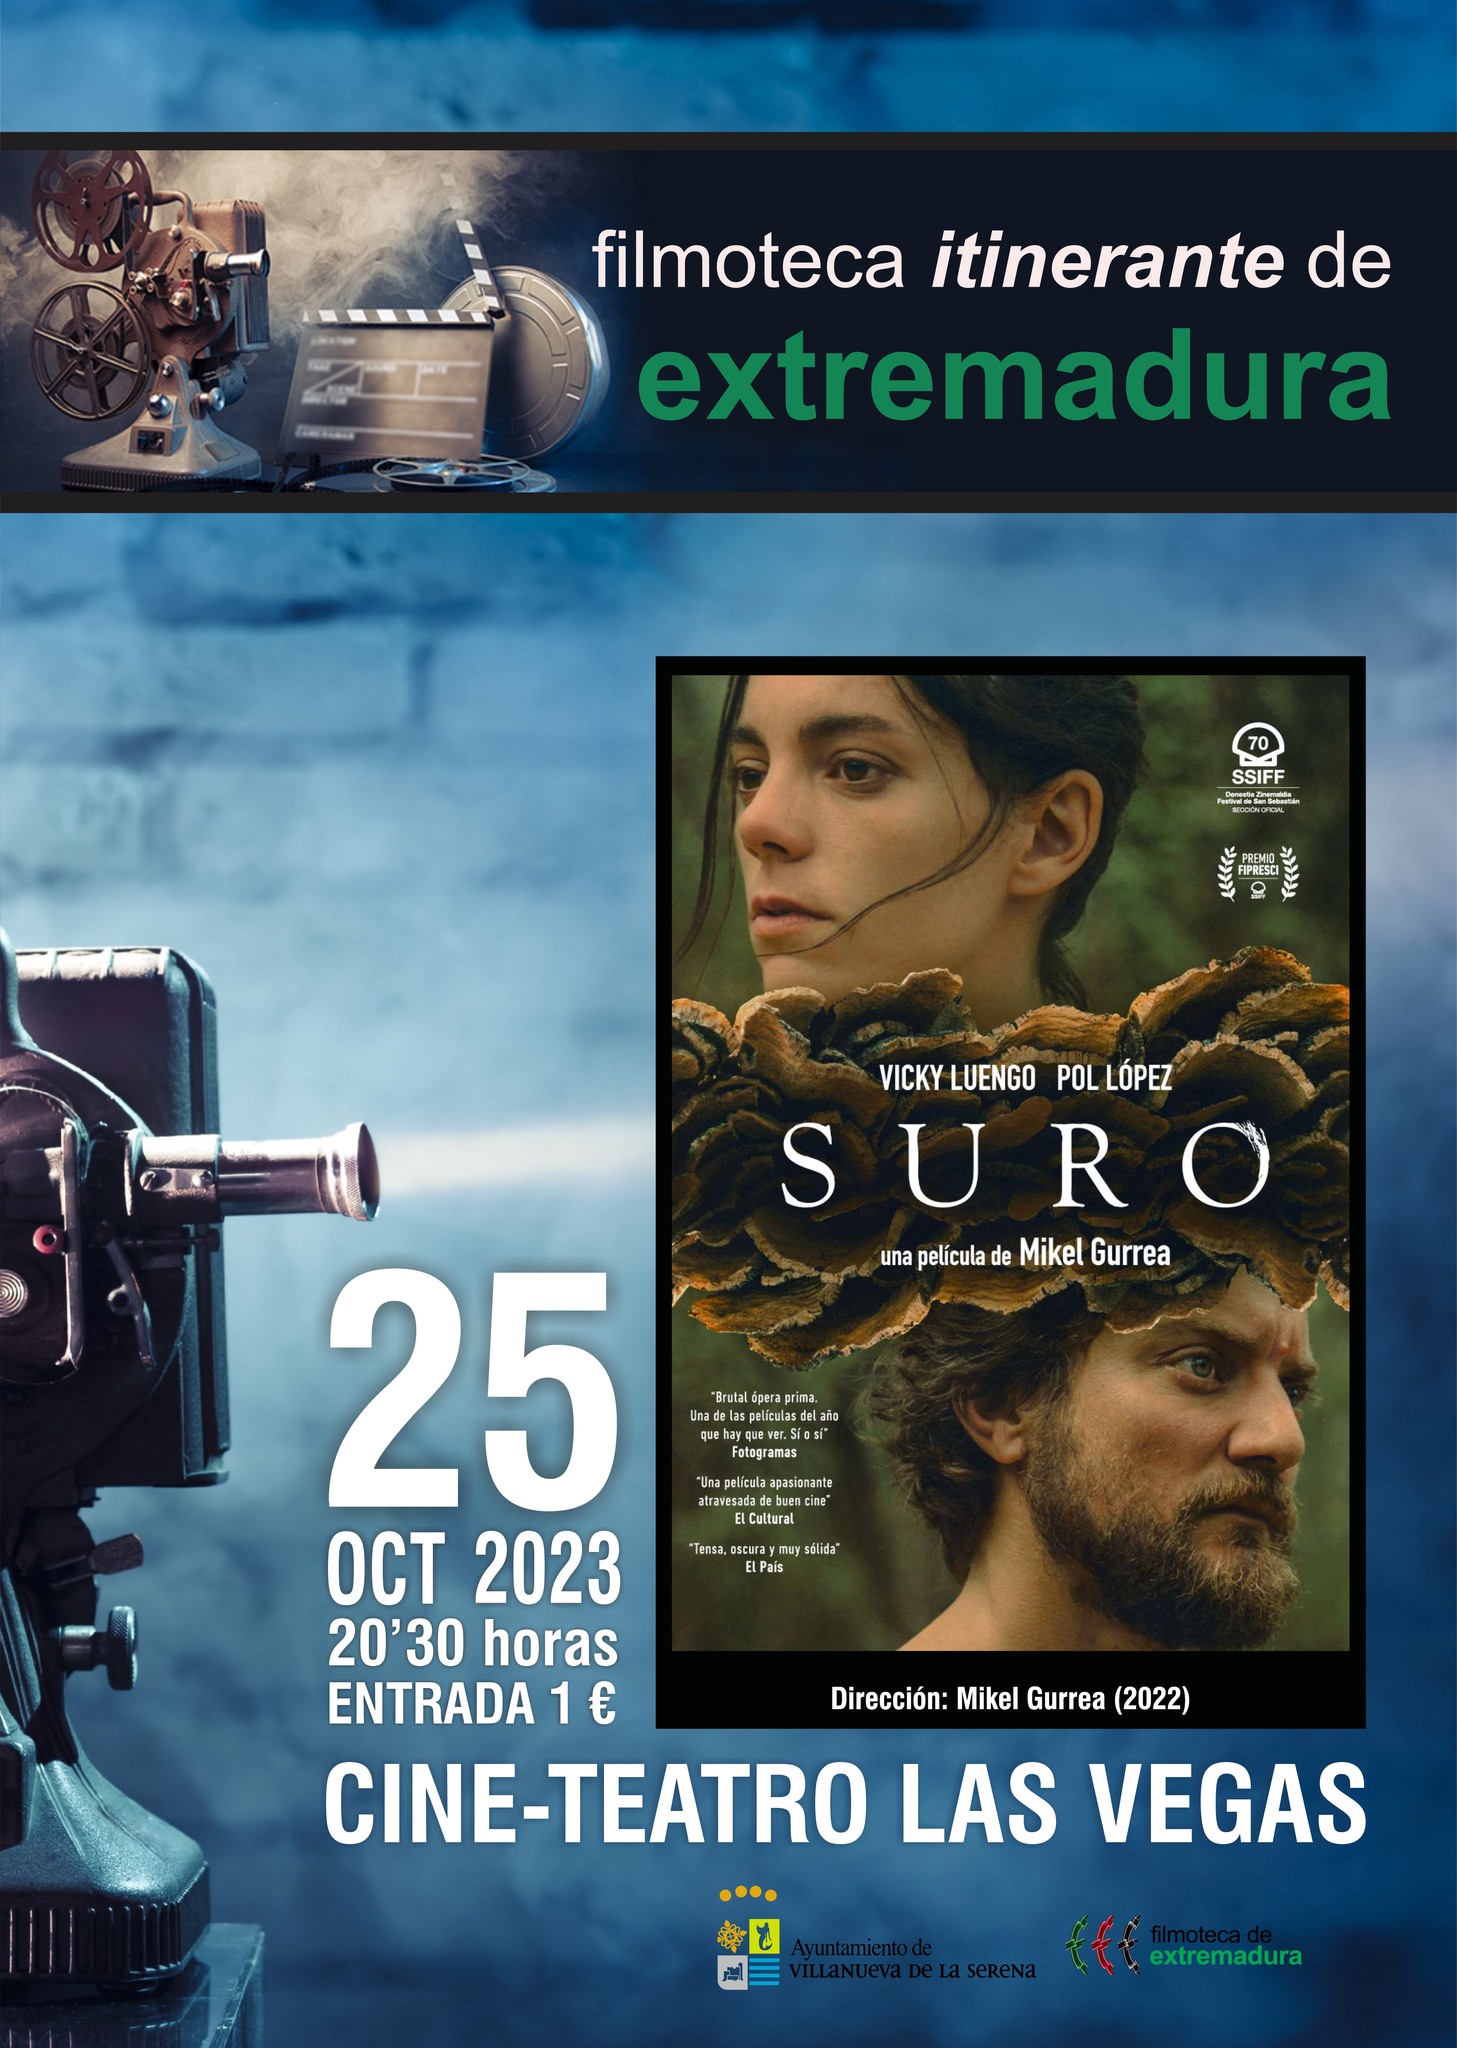 Filmoteca de Extremadura 'Suro' una película de Mikel Gurrea